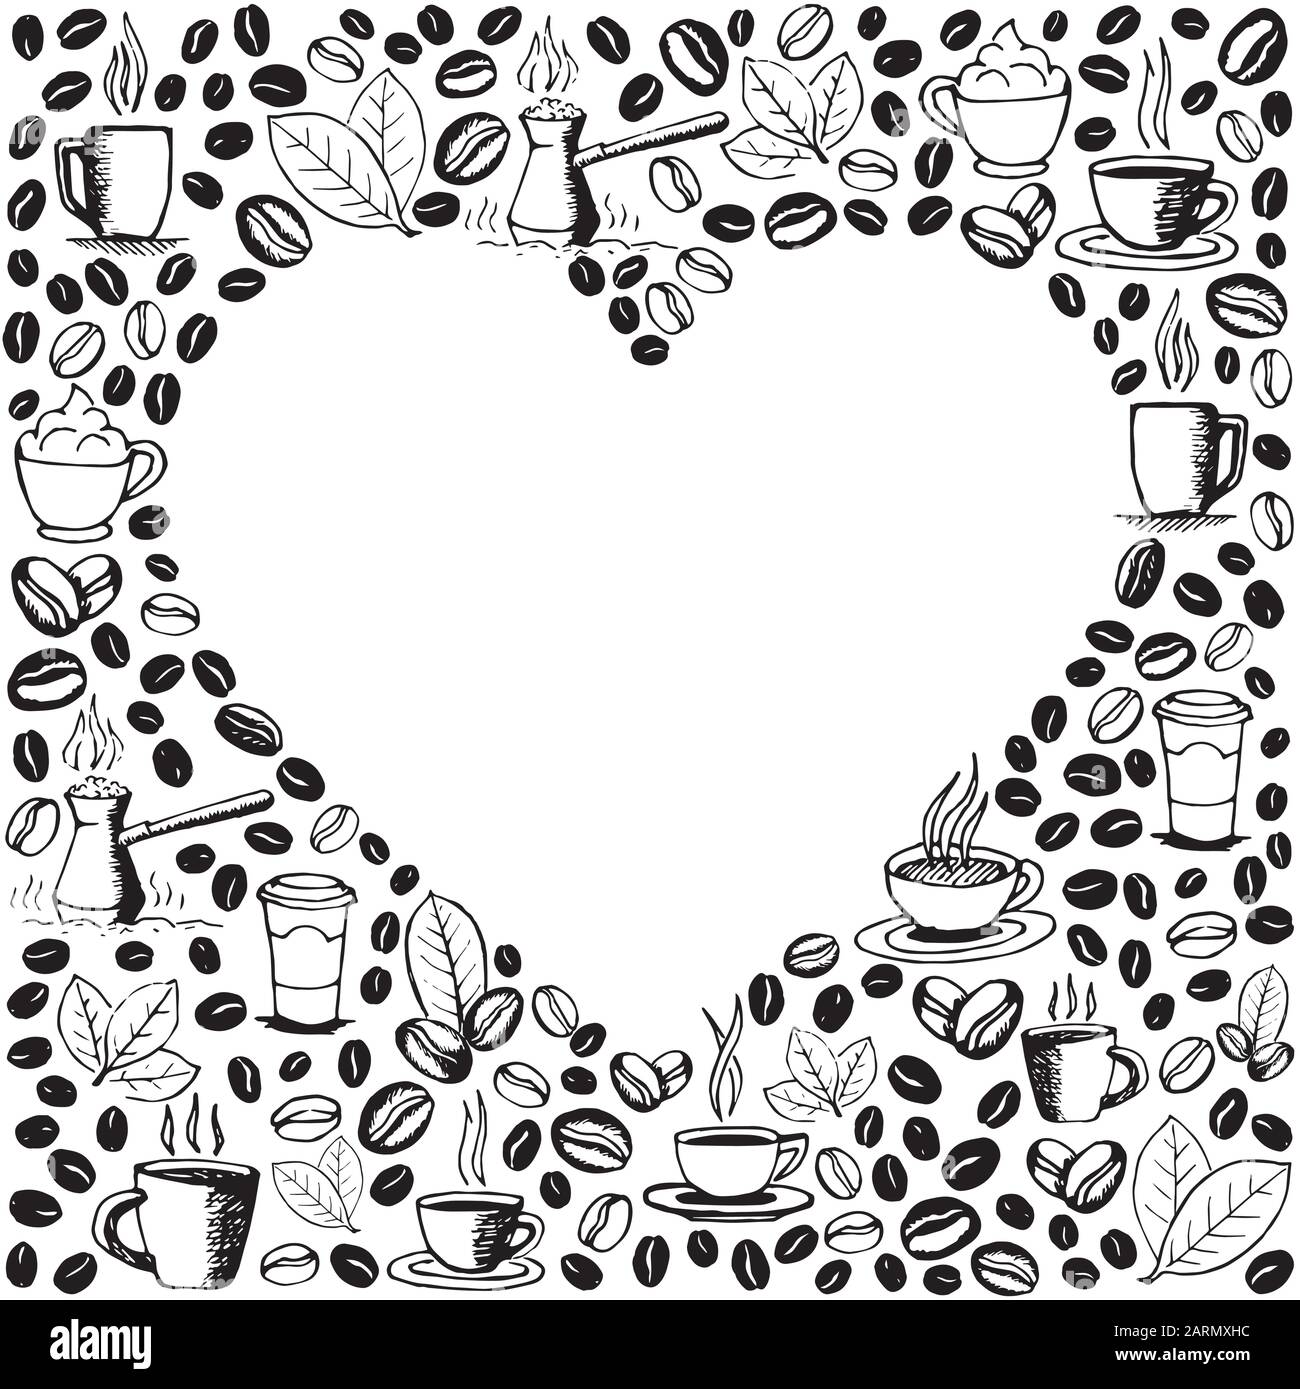 Kaffeesymbole im Hintergrund mit leerer Herzform im Inneren. Handgezeichnetes, skizzenhaftes Muster. Vektor eps8-Abbildung. Stock Vektor